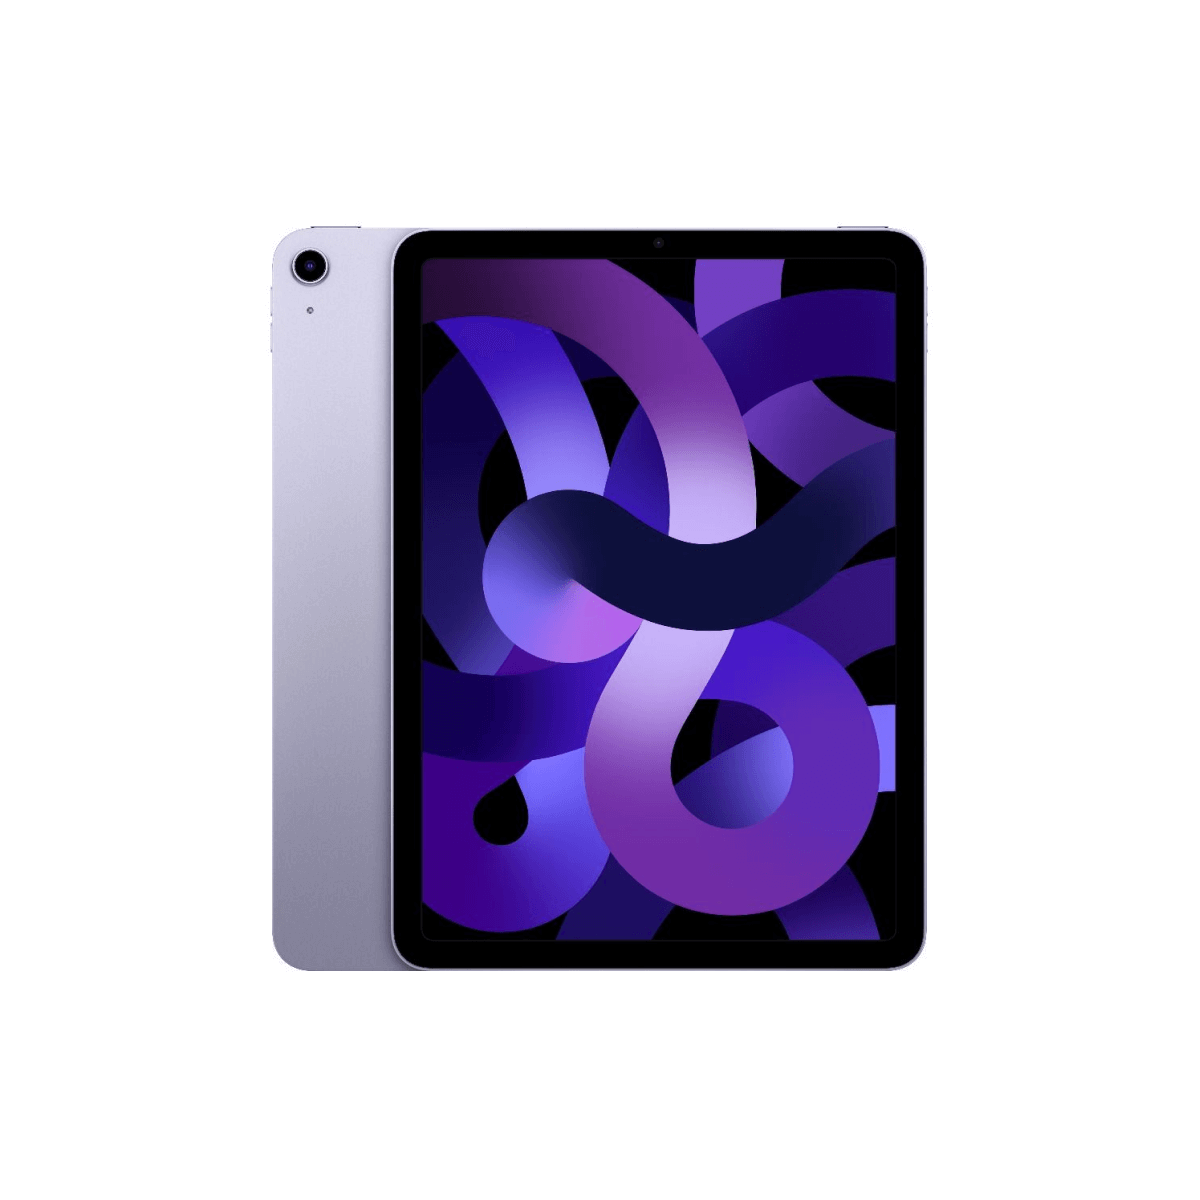 iPad Air (2022)